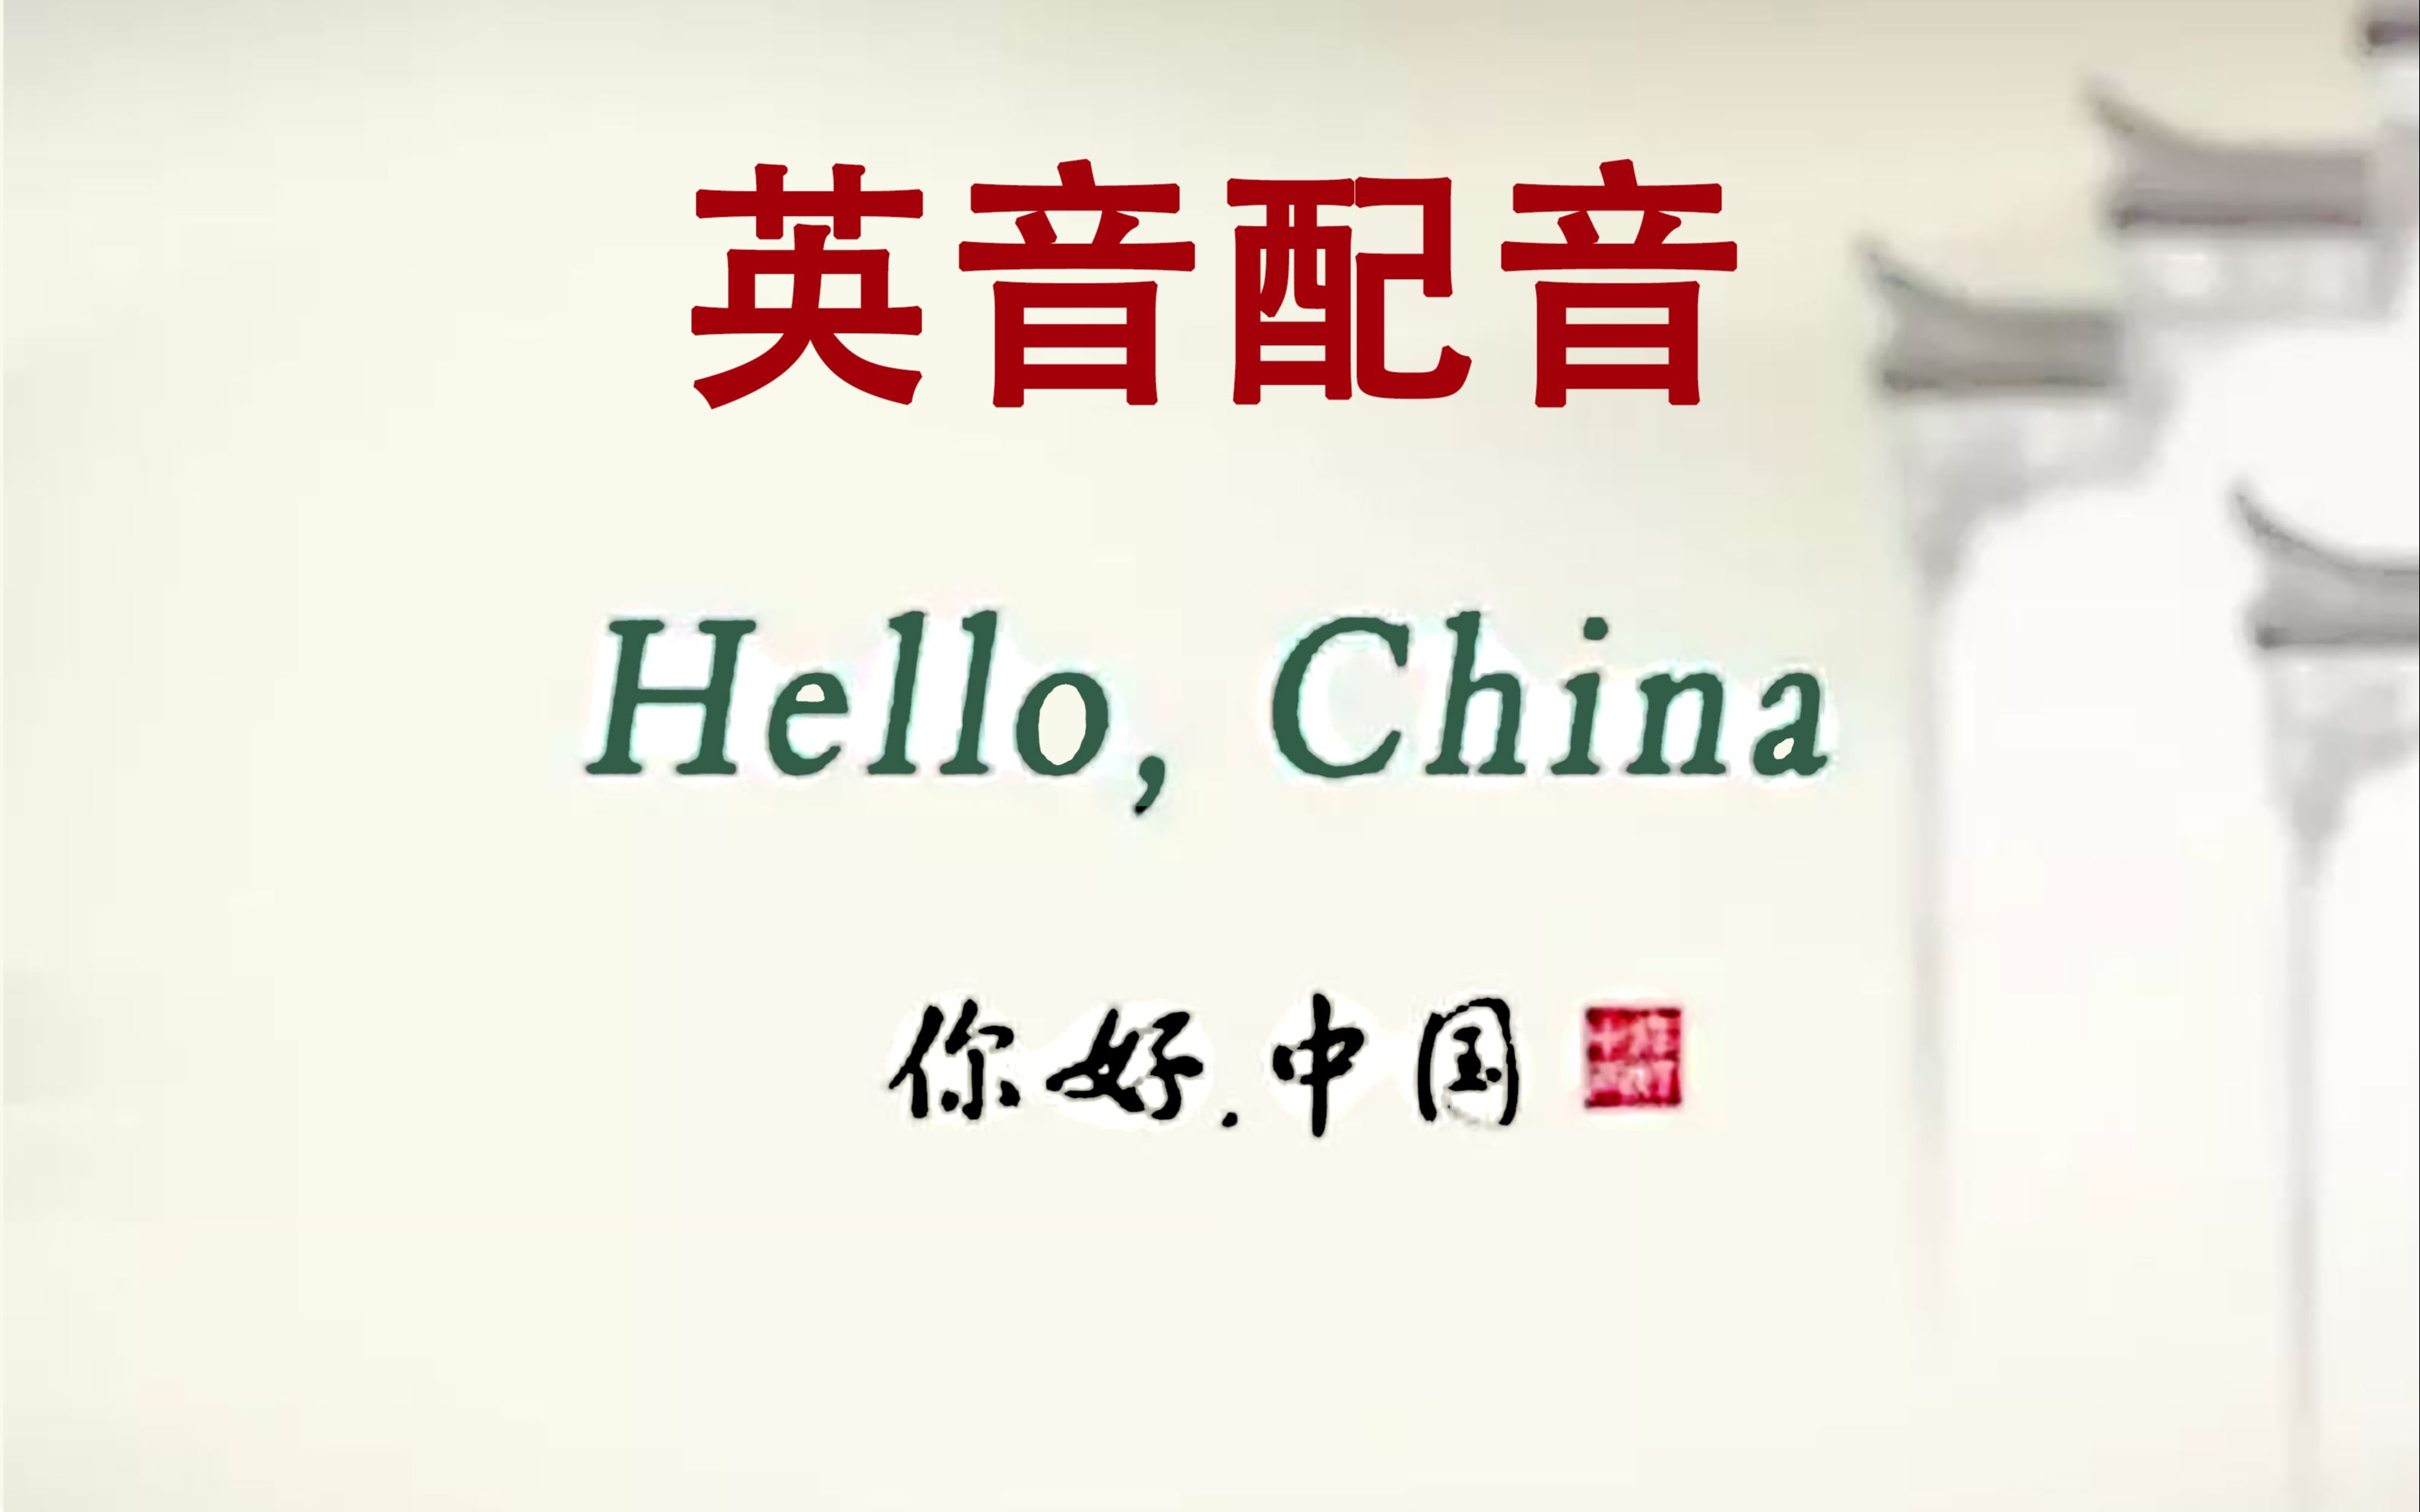 [图]【状元】Hello China《你好中国》英音配音